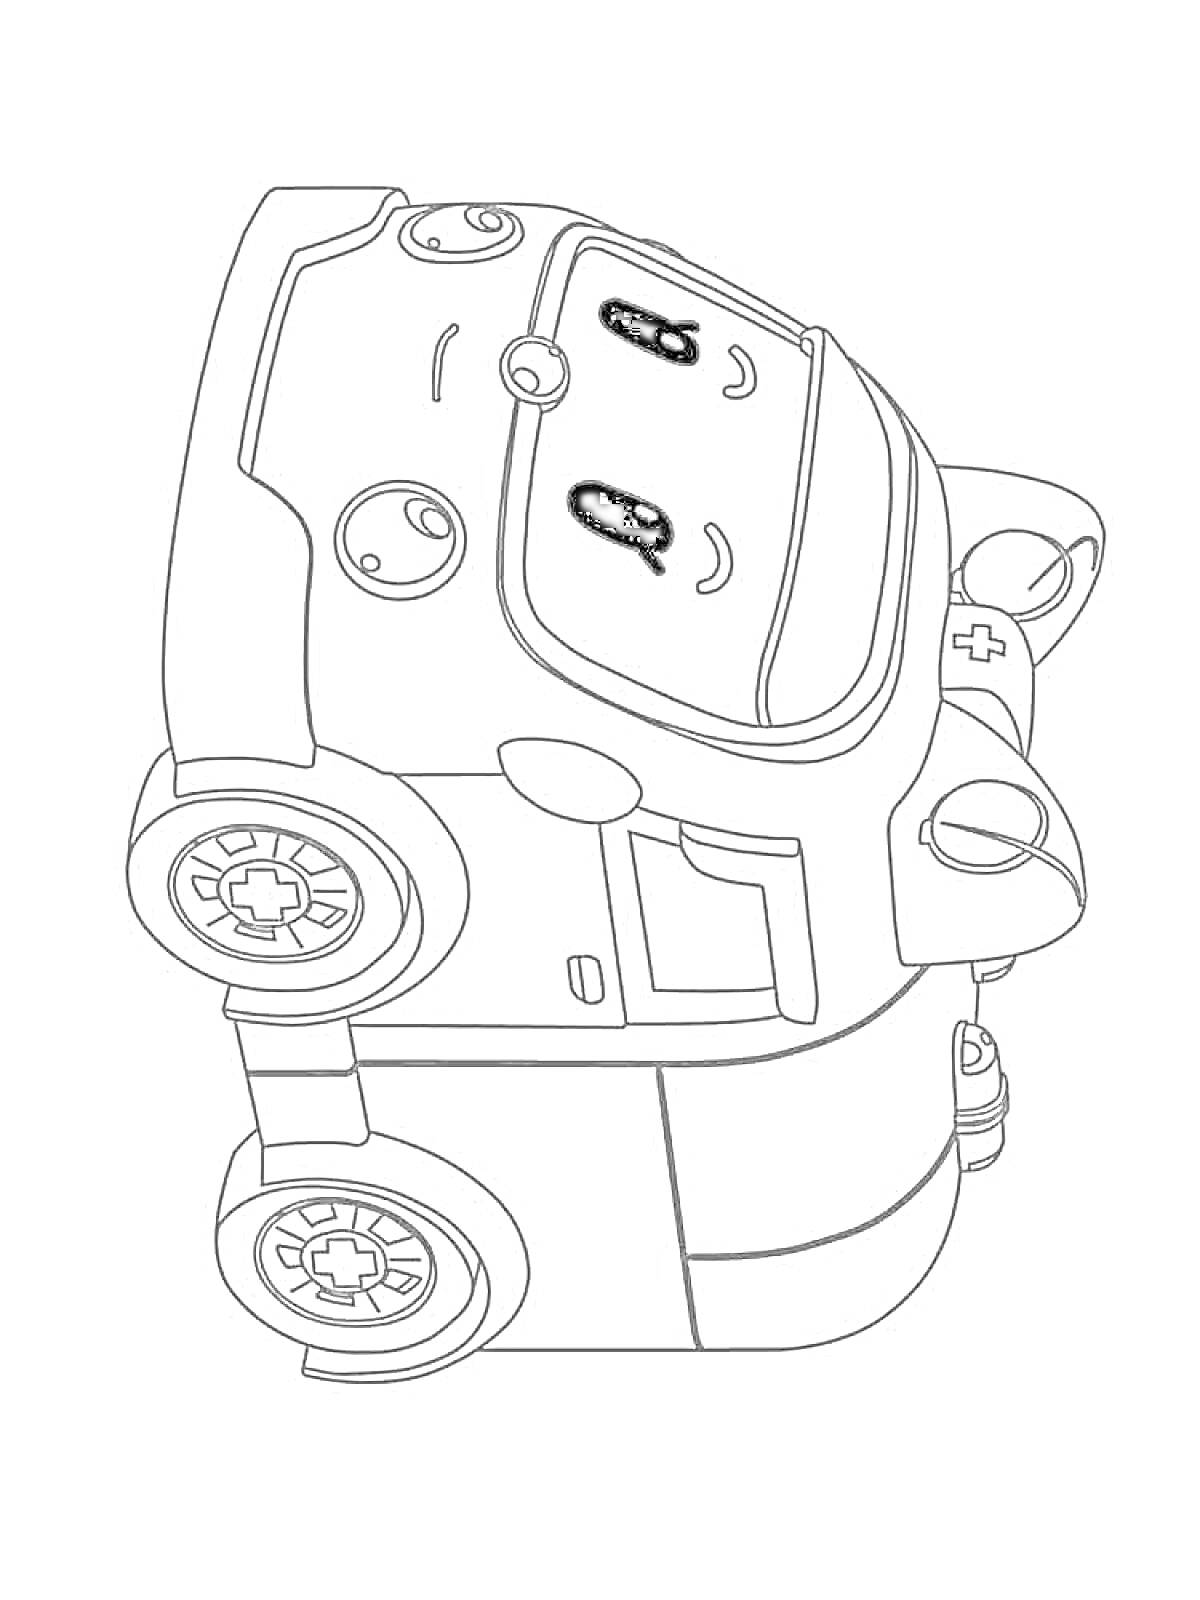 Раскраска машинка-робот с лицом и двумя большими колесами